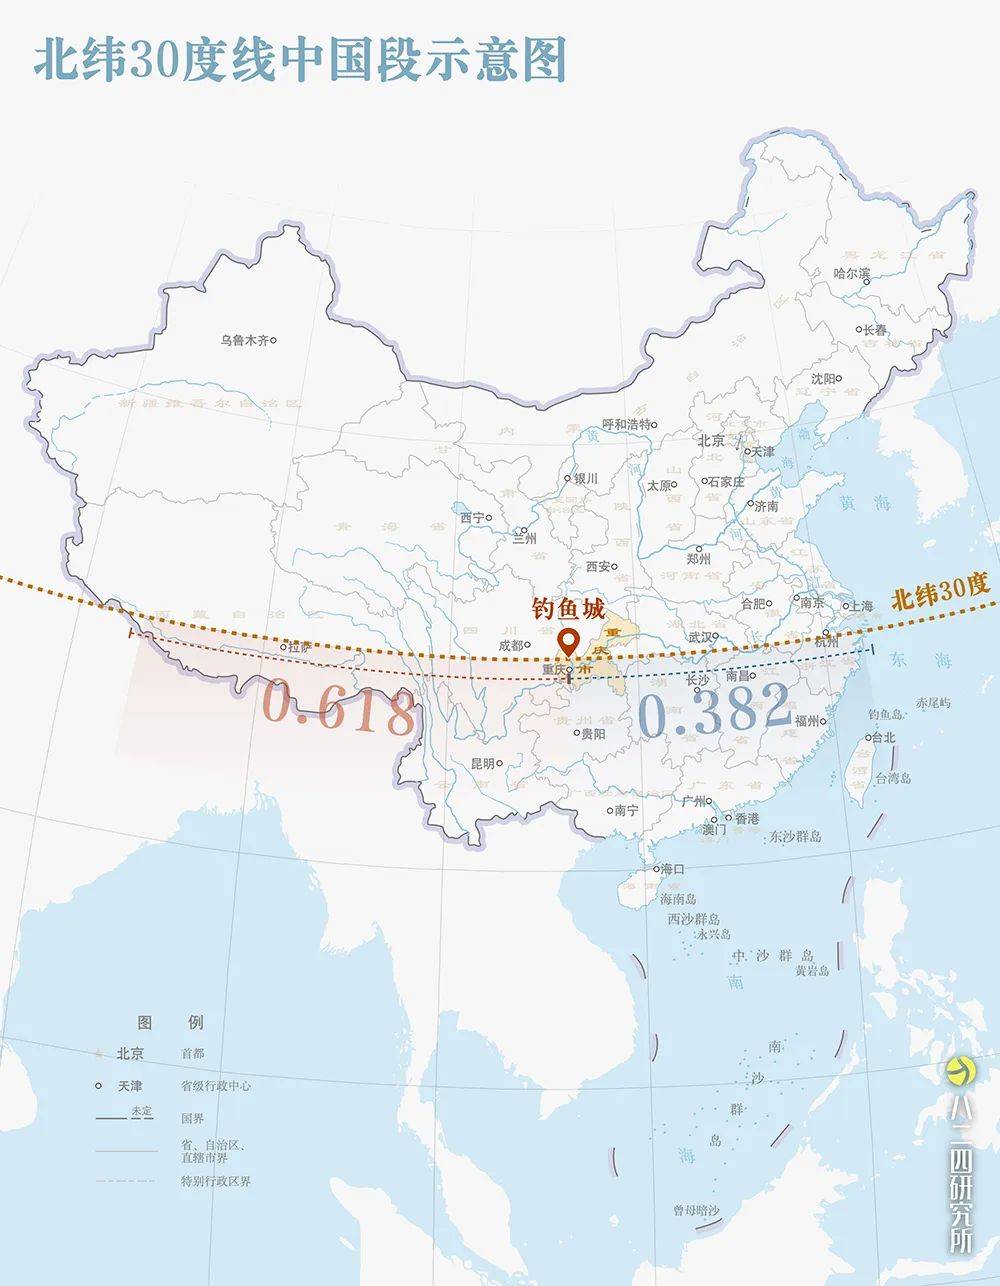 换而言之北纬30度线中国段的黄金分割处就是重庆这一有趣有料的重要